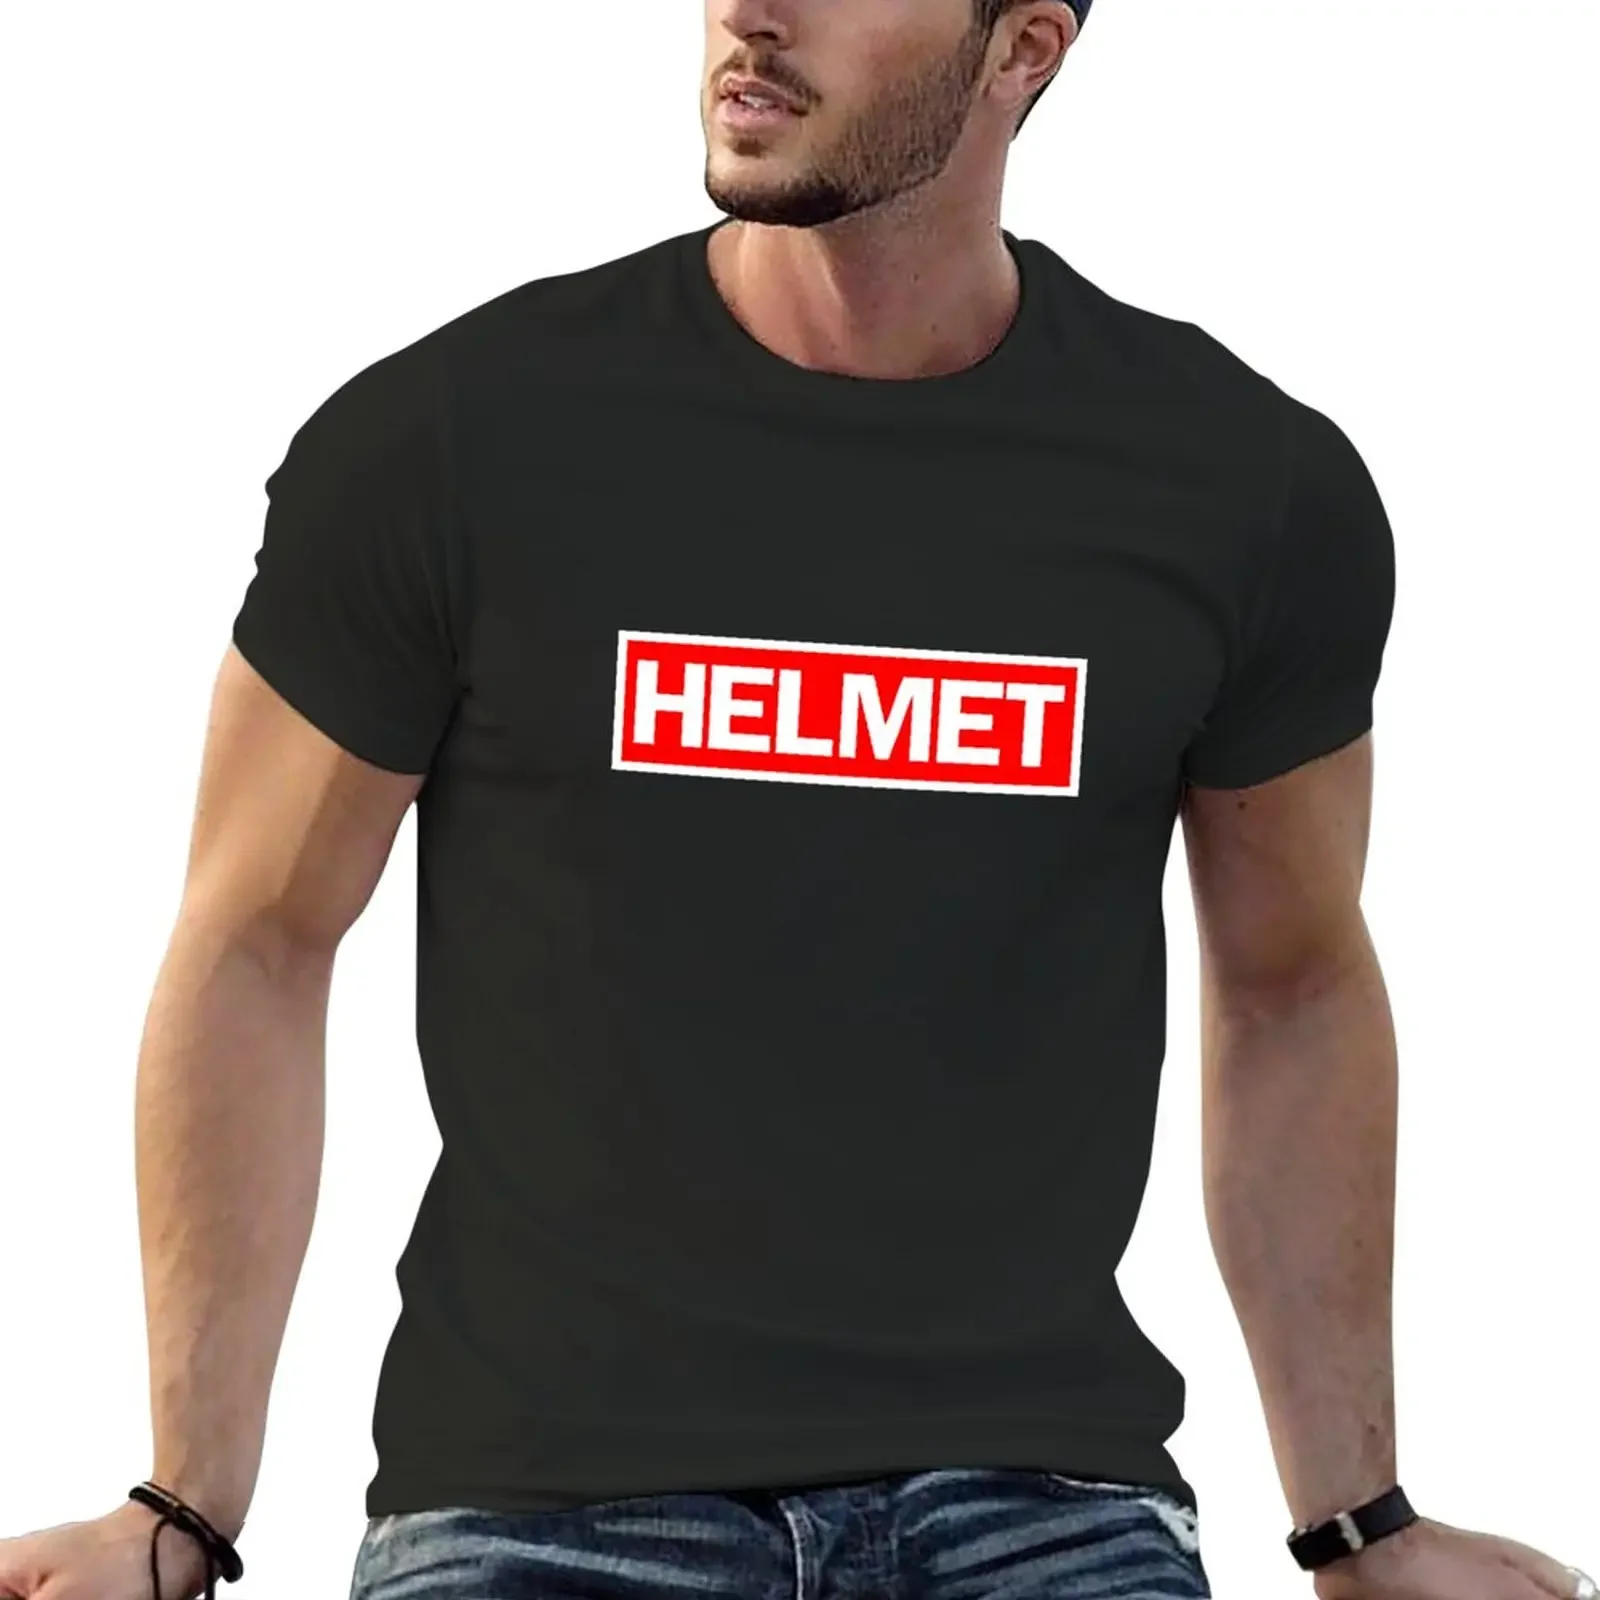 

Футболка с логотипом шлема, летний топ, кавайная одежда, эстетическая одежда, мужские футболки с графическим рисунком, забавные